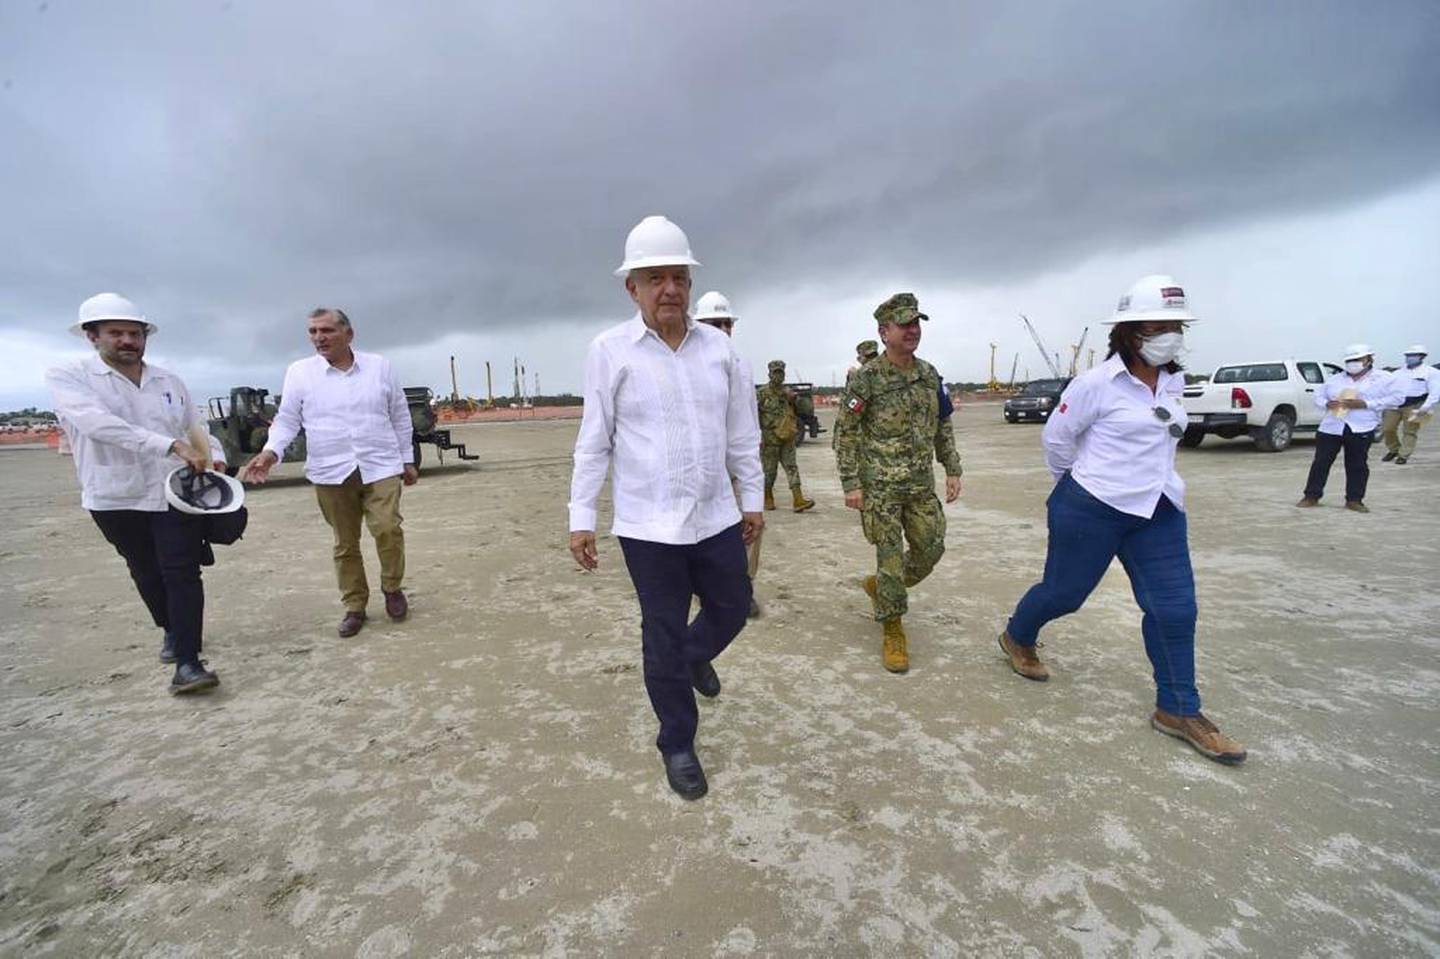 El presidente López Obrador en una visita a la obra de la refinería de Dos Bocas, en compañía de la secretaria de Energía, Rocío Nahle. dfd